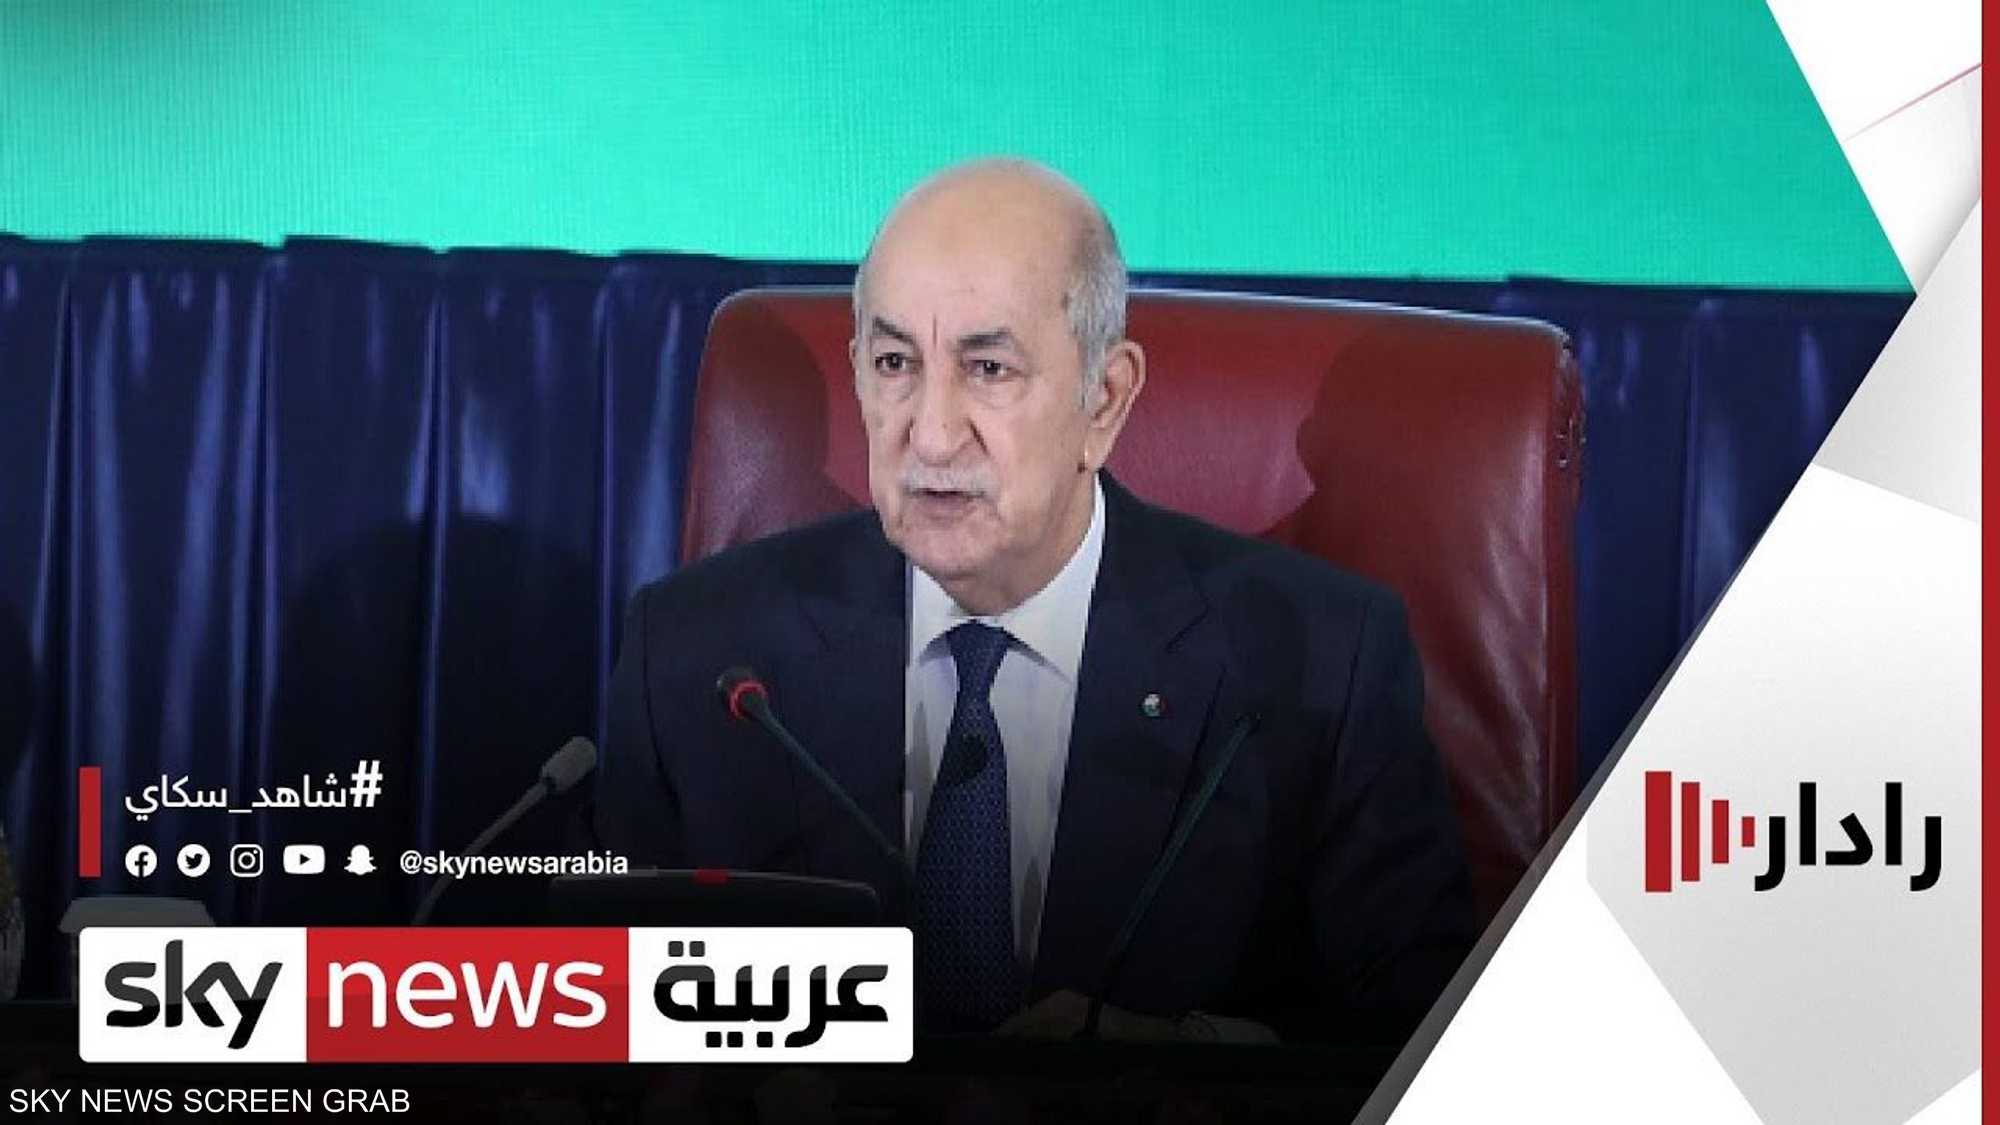 الرئيس الجزائري يحذر من تكرار تجربة سوريا في ليبيا